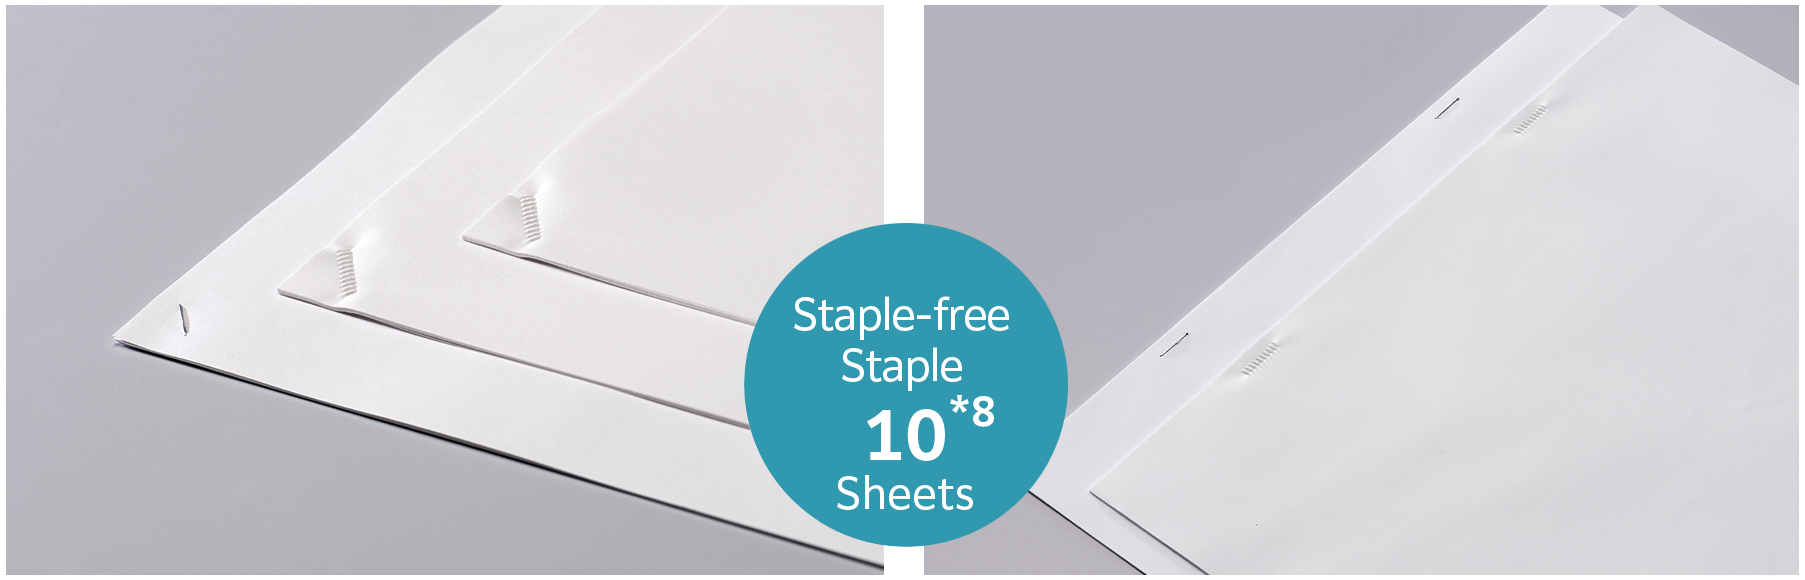 Staple-free stapling